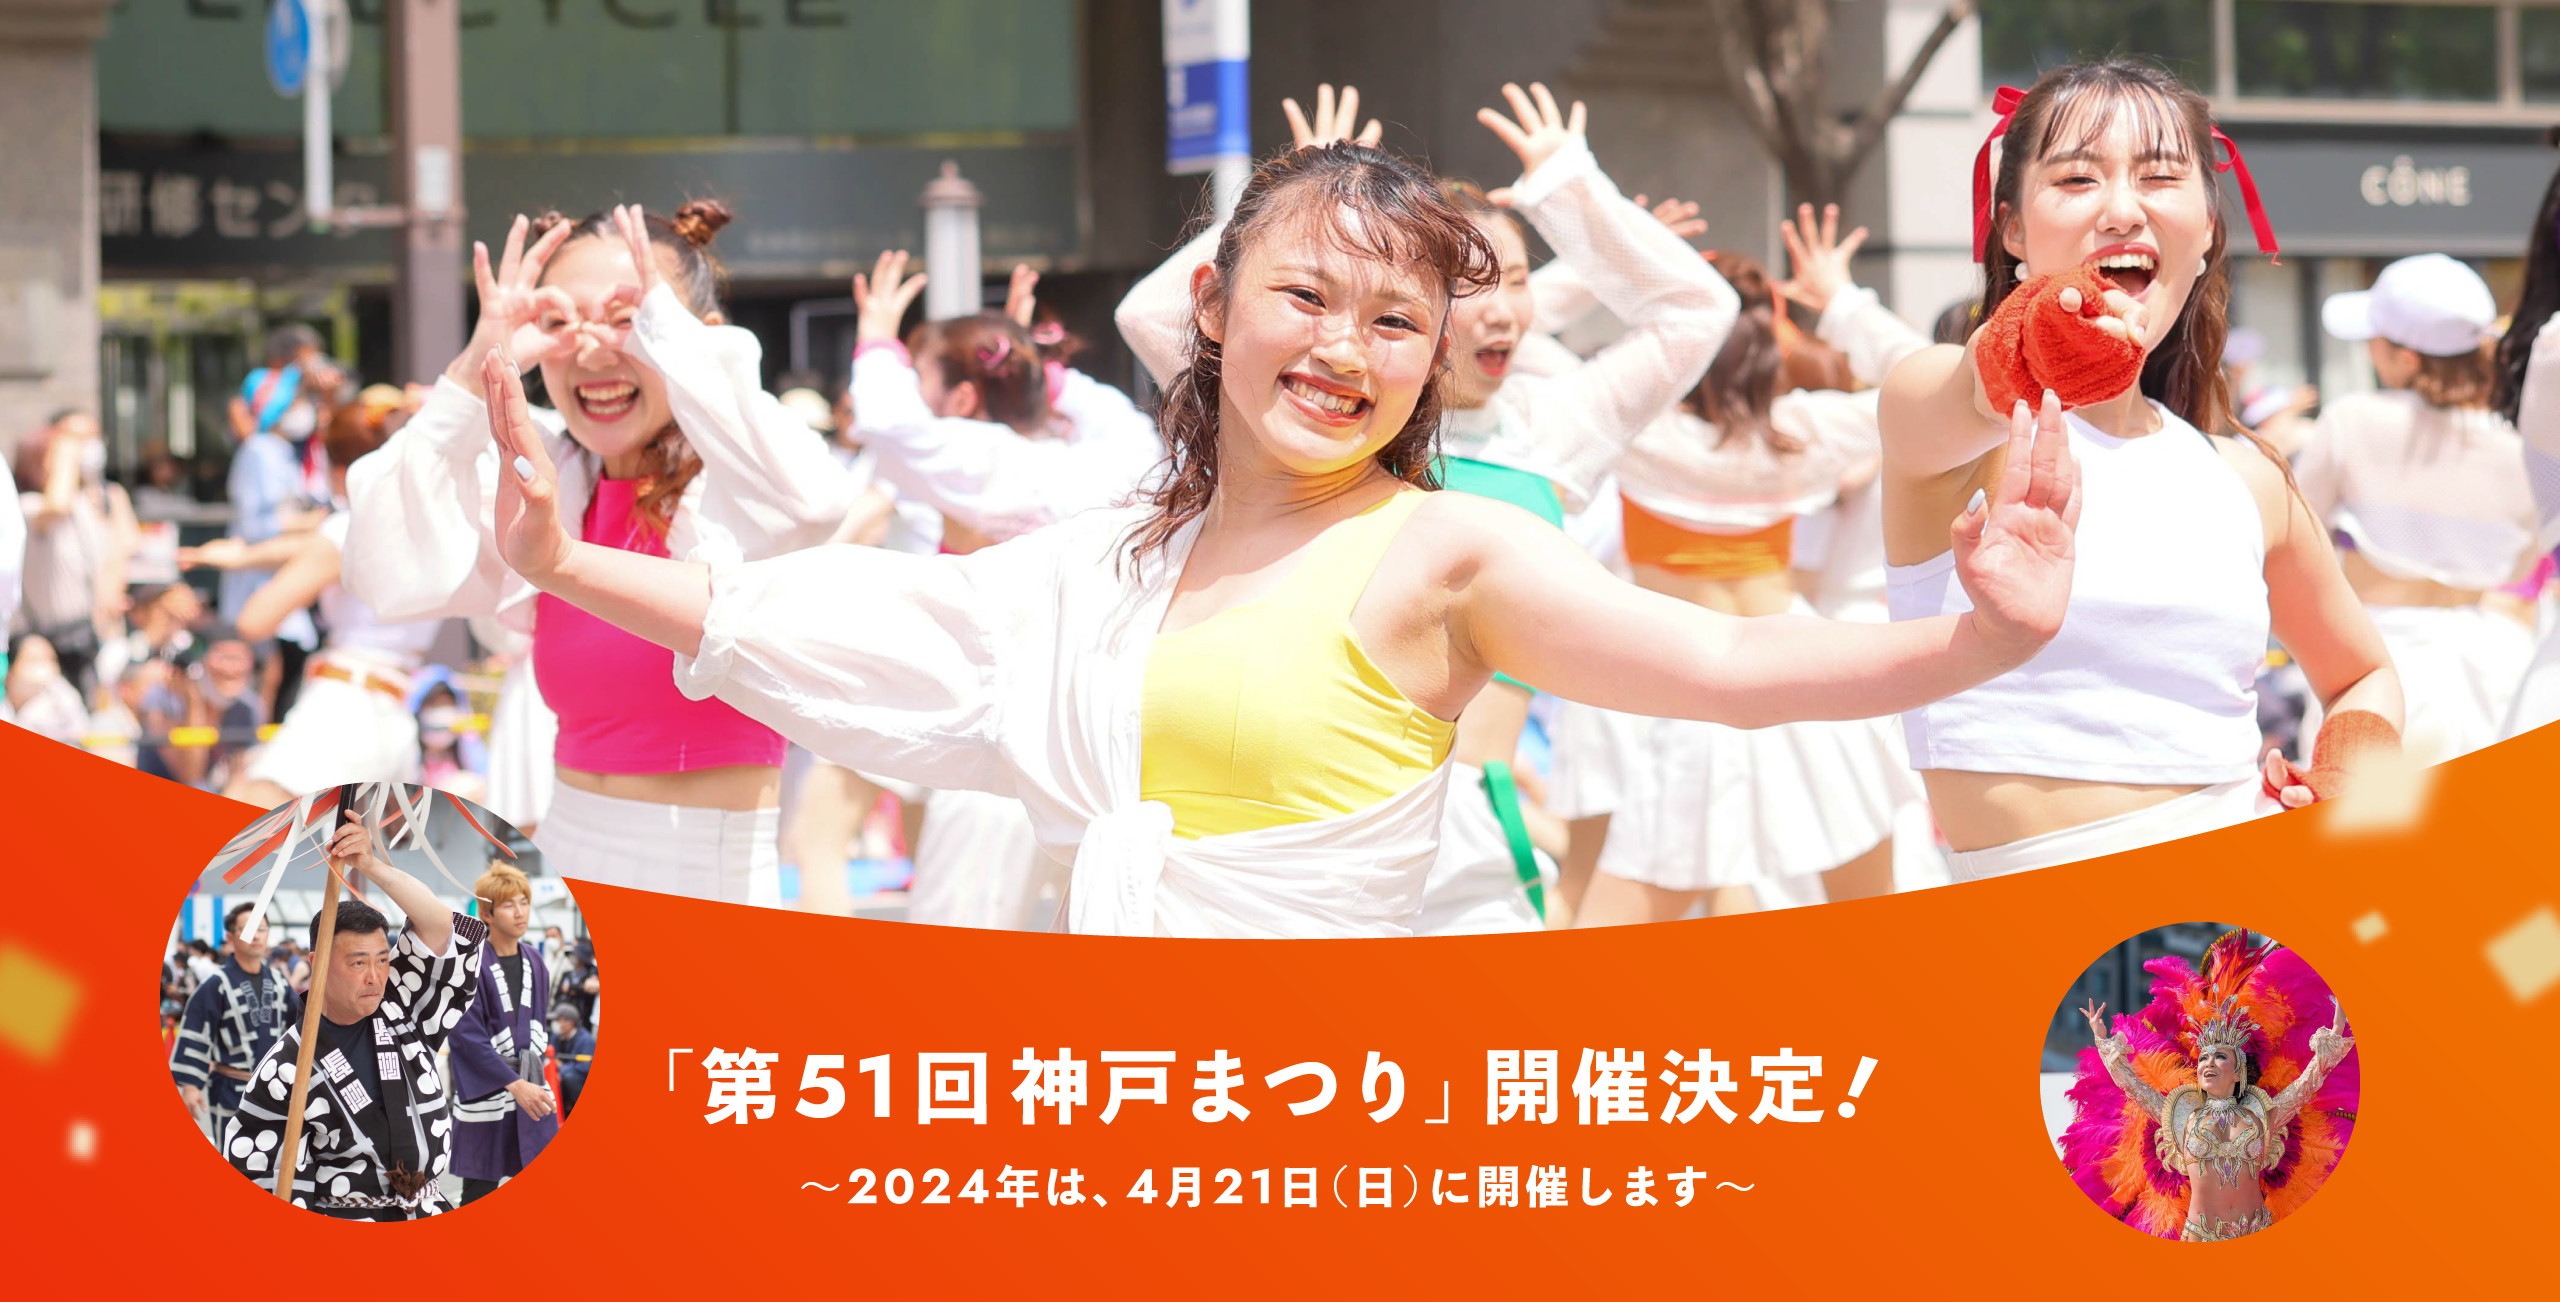 「第51回神戸まつり」開催決定! 〜2024年は、4月21日(日)に開催します〜